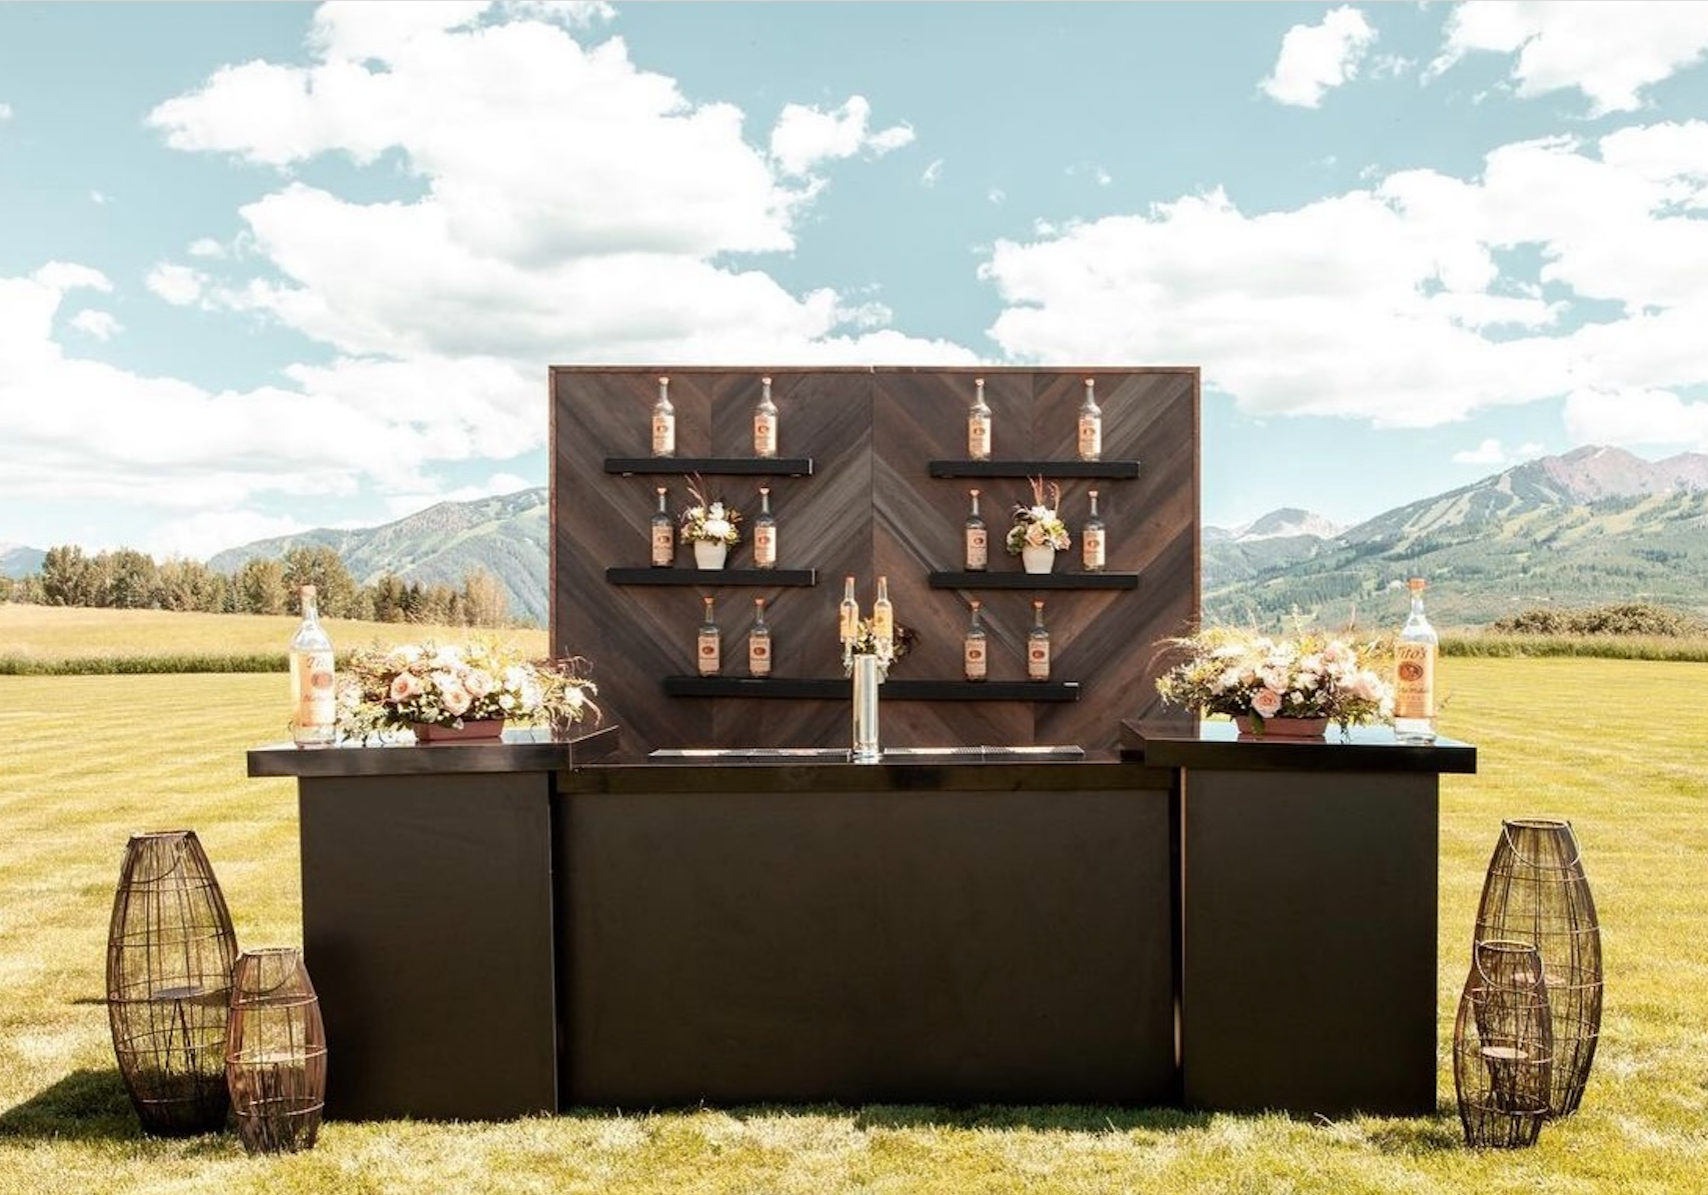 Aspen Colorado Titos Vodka custom decor brand activation event custom design and decor